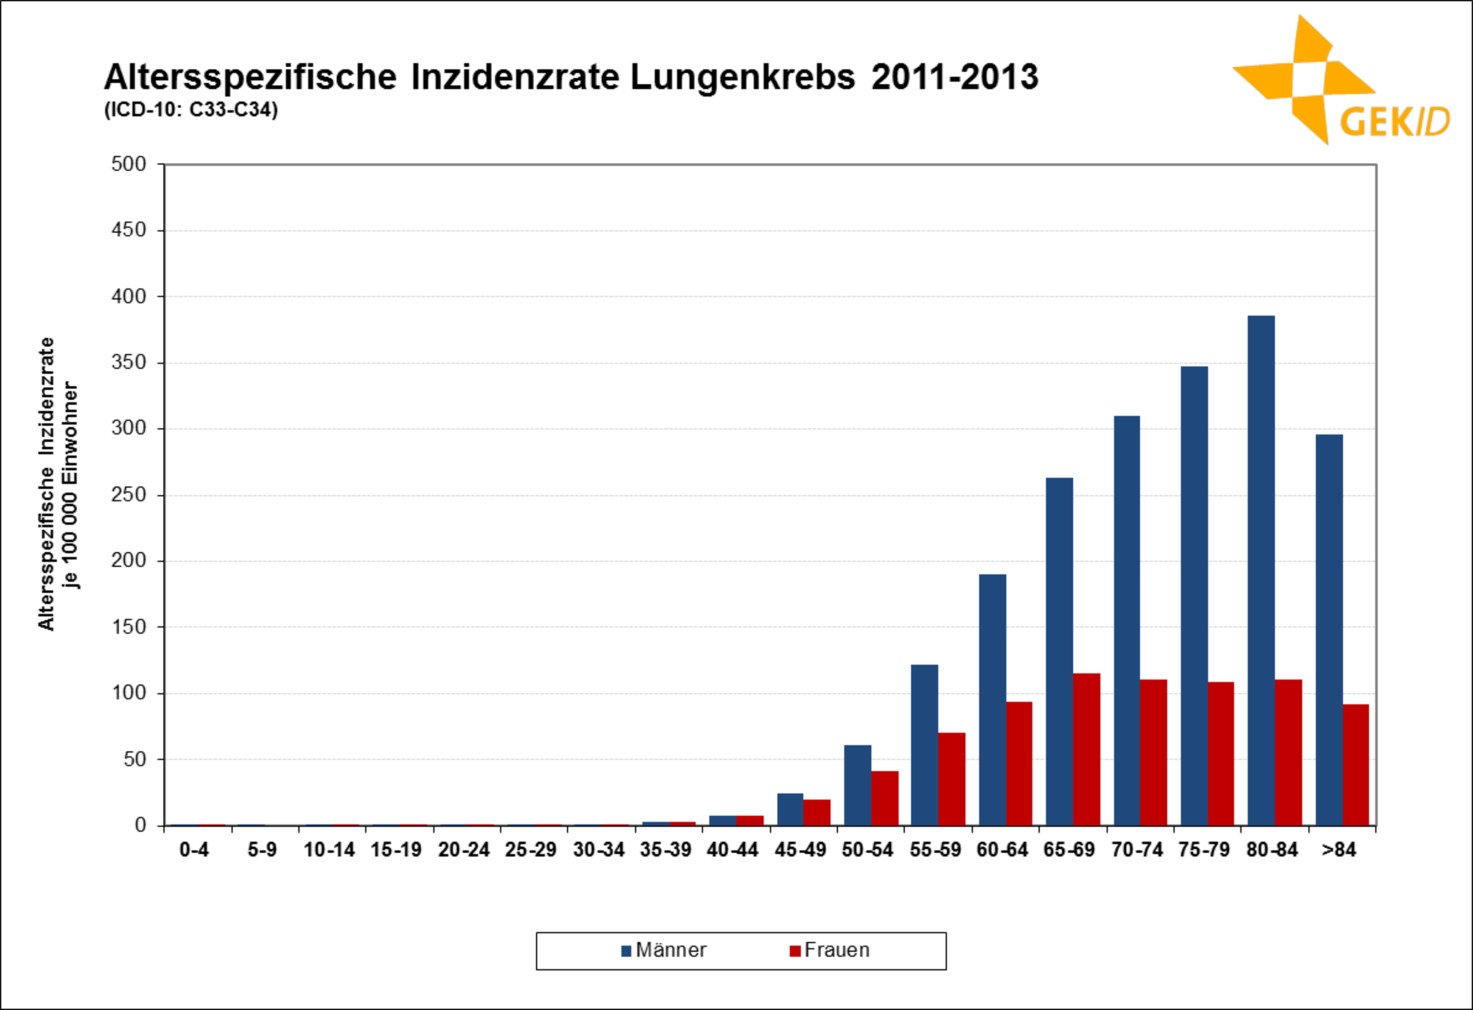 Altersspezifische Inzidenz des Lungenkarzinoms in Deutschland (Frauen/Männer)